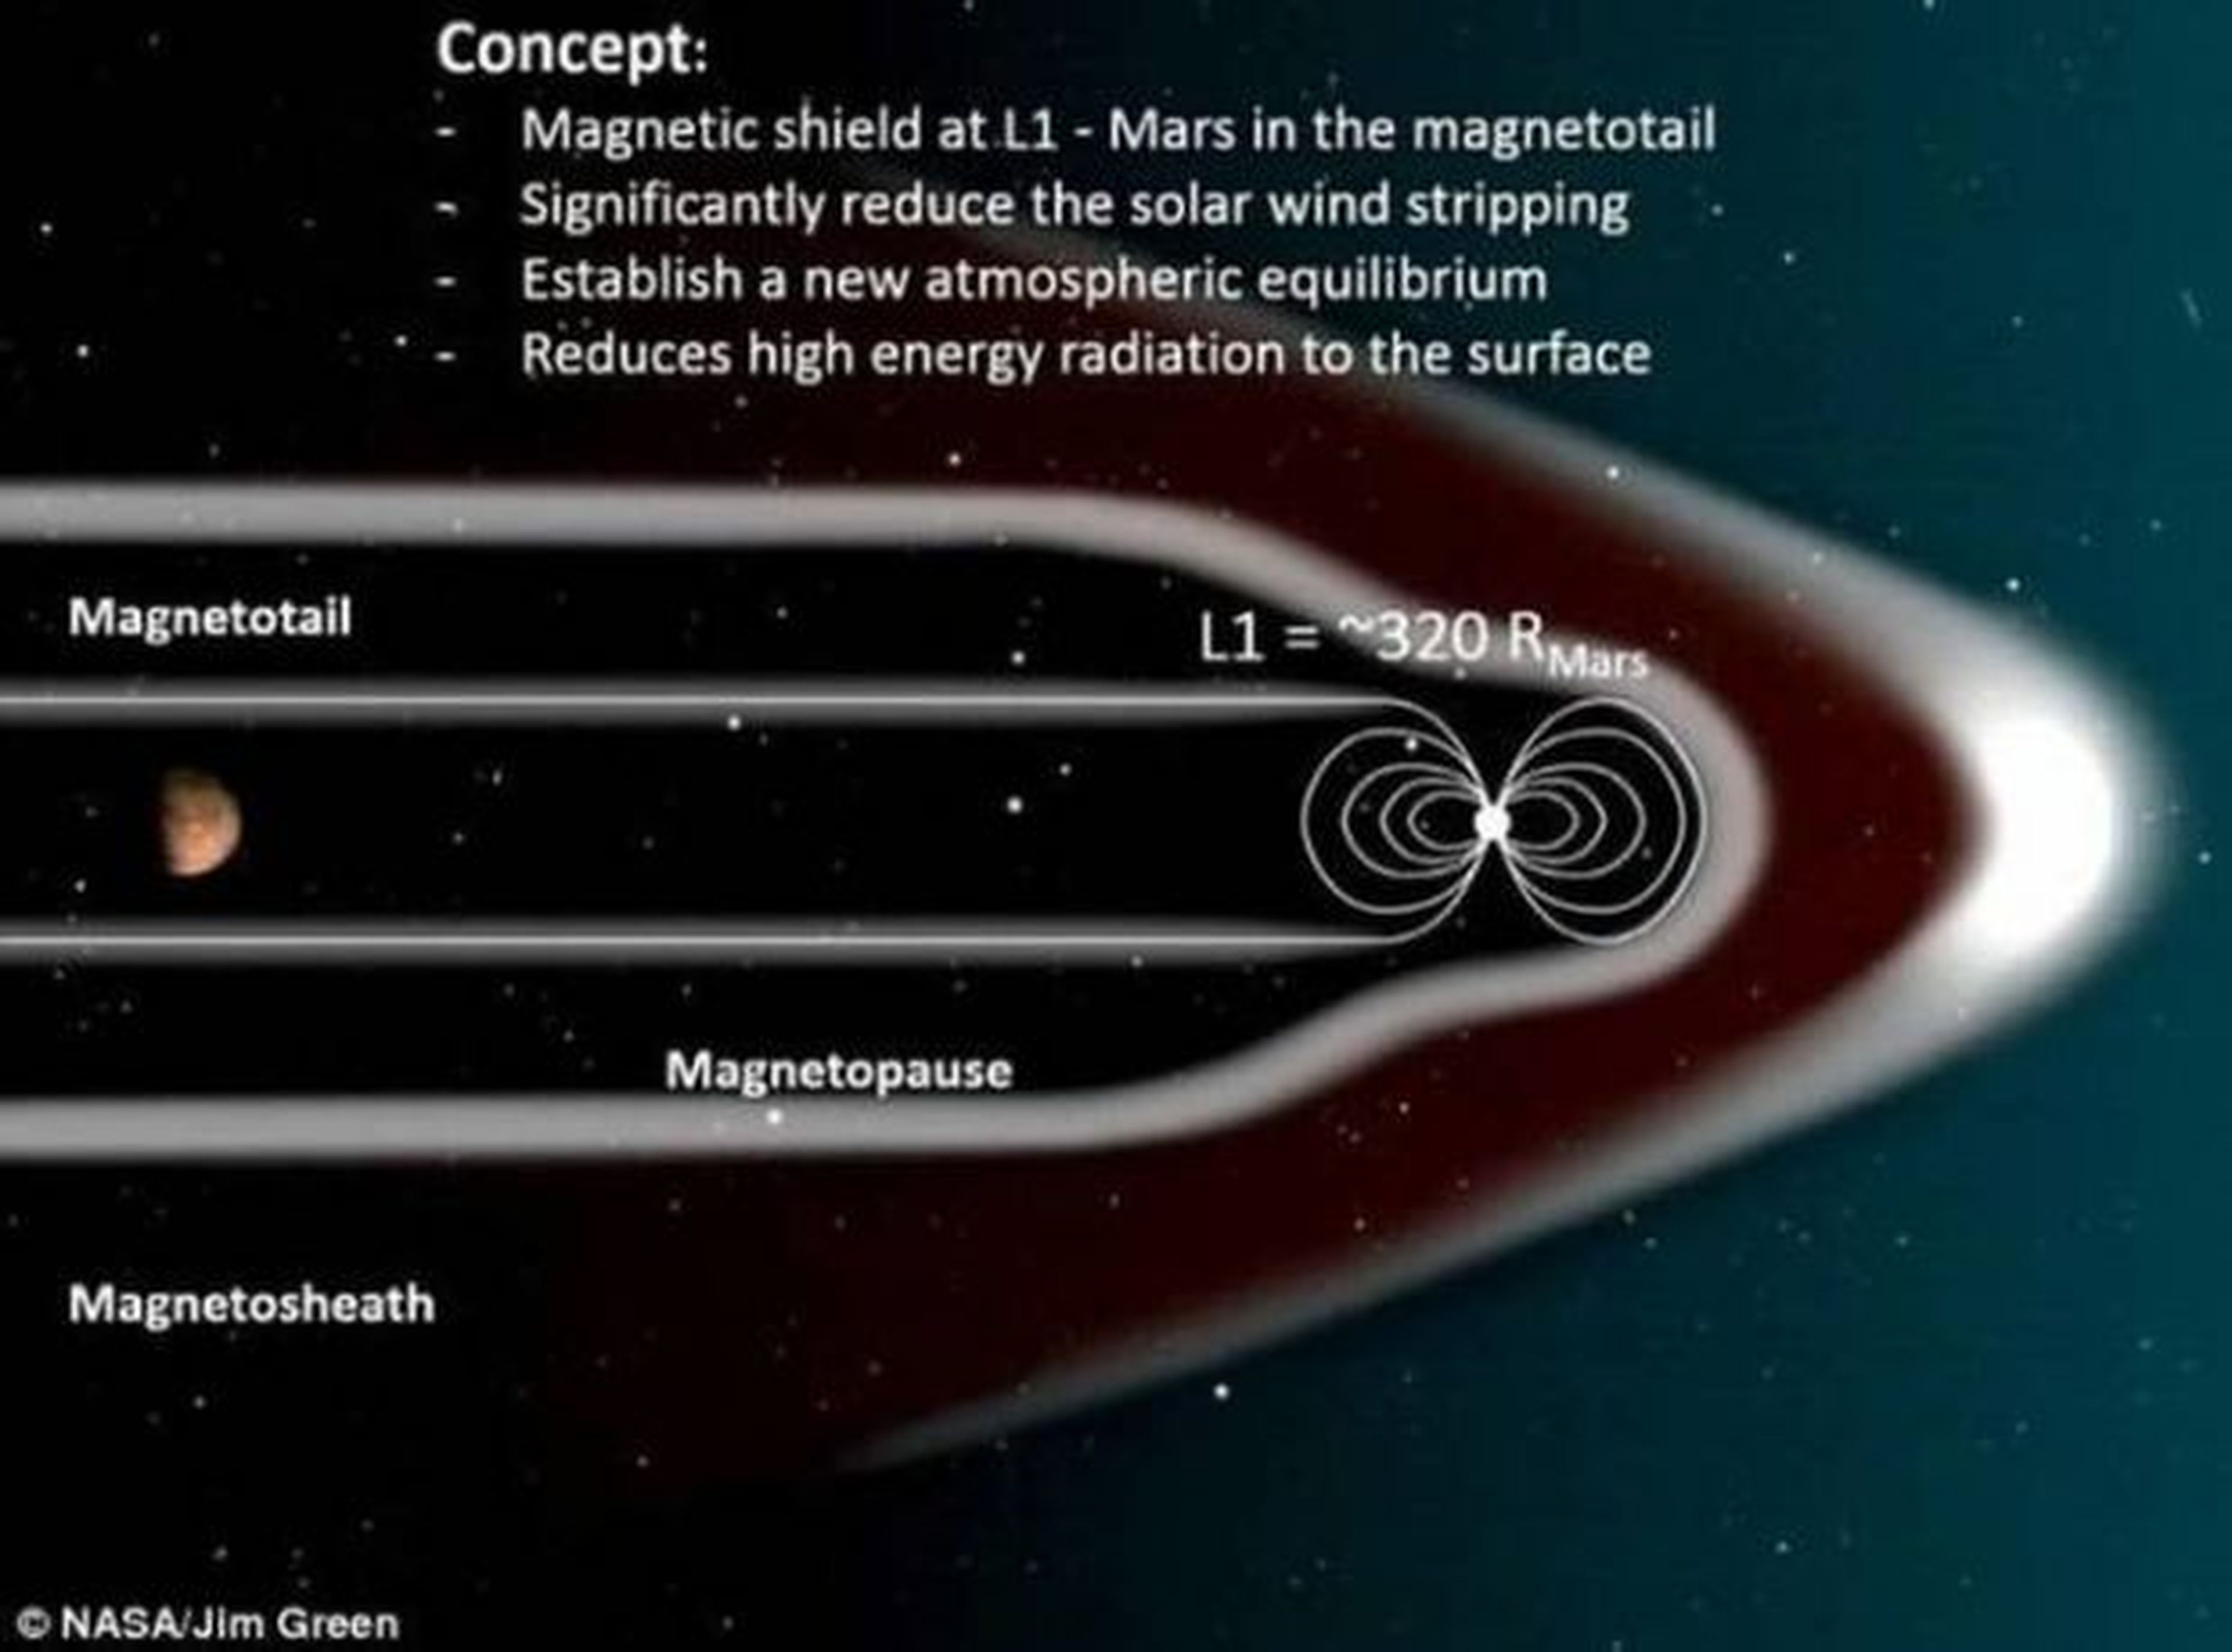 Marte podría ser habitable gracias a este proyecto de la NASA